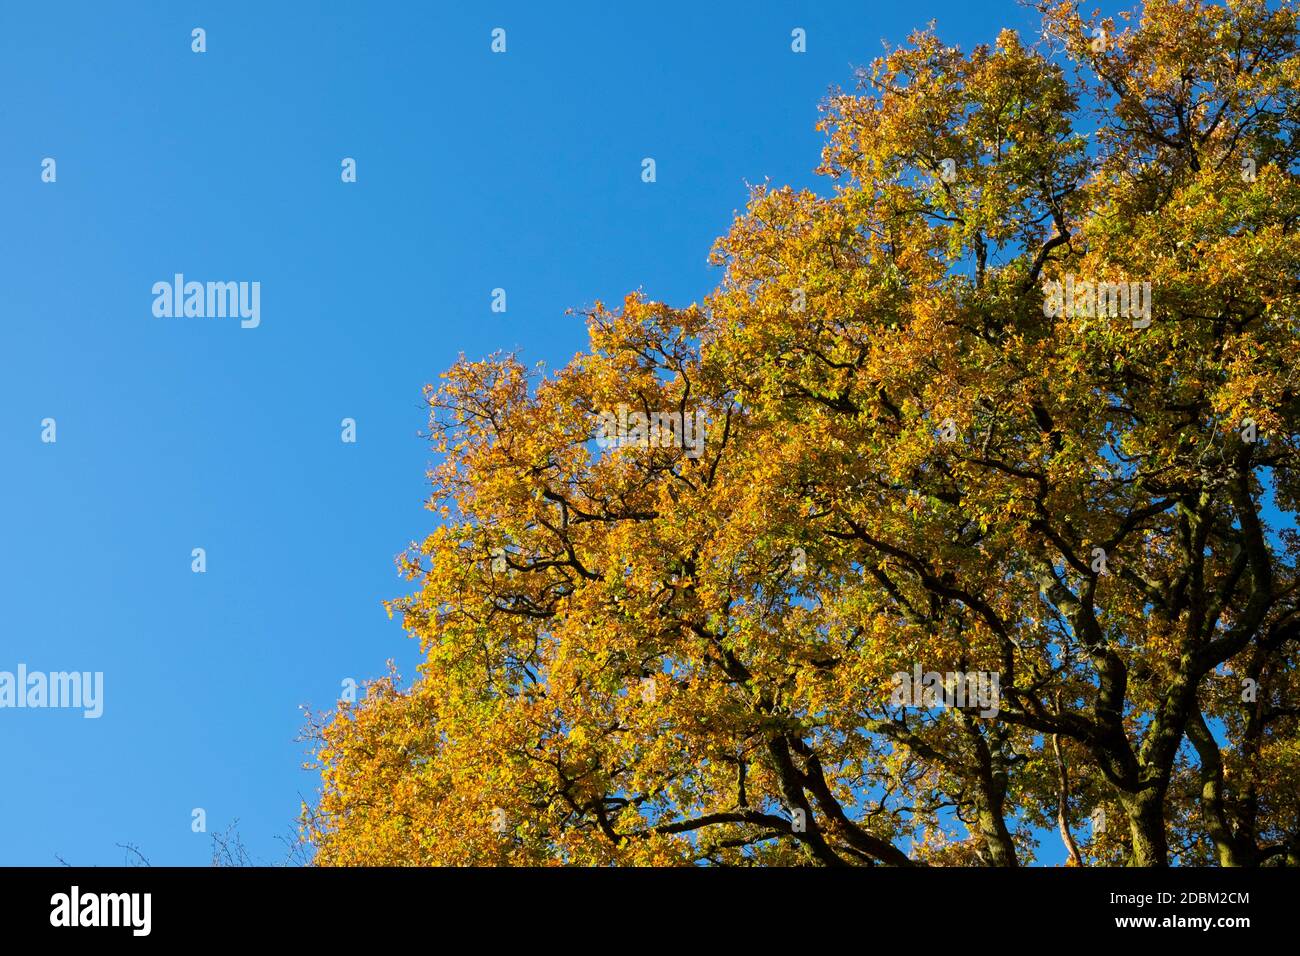 Herbstorange Blätter einer riesigen Eiche von unten Blick auf blauen Himmel an sonnigen Tag Sonnenschein Kopie Space Wales Großbritannien 2020 KATHY DEWITT Stockfoto